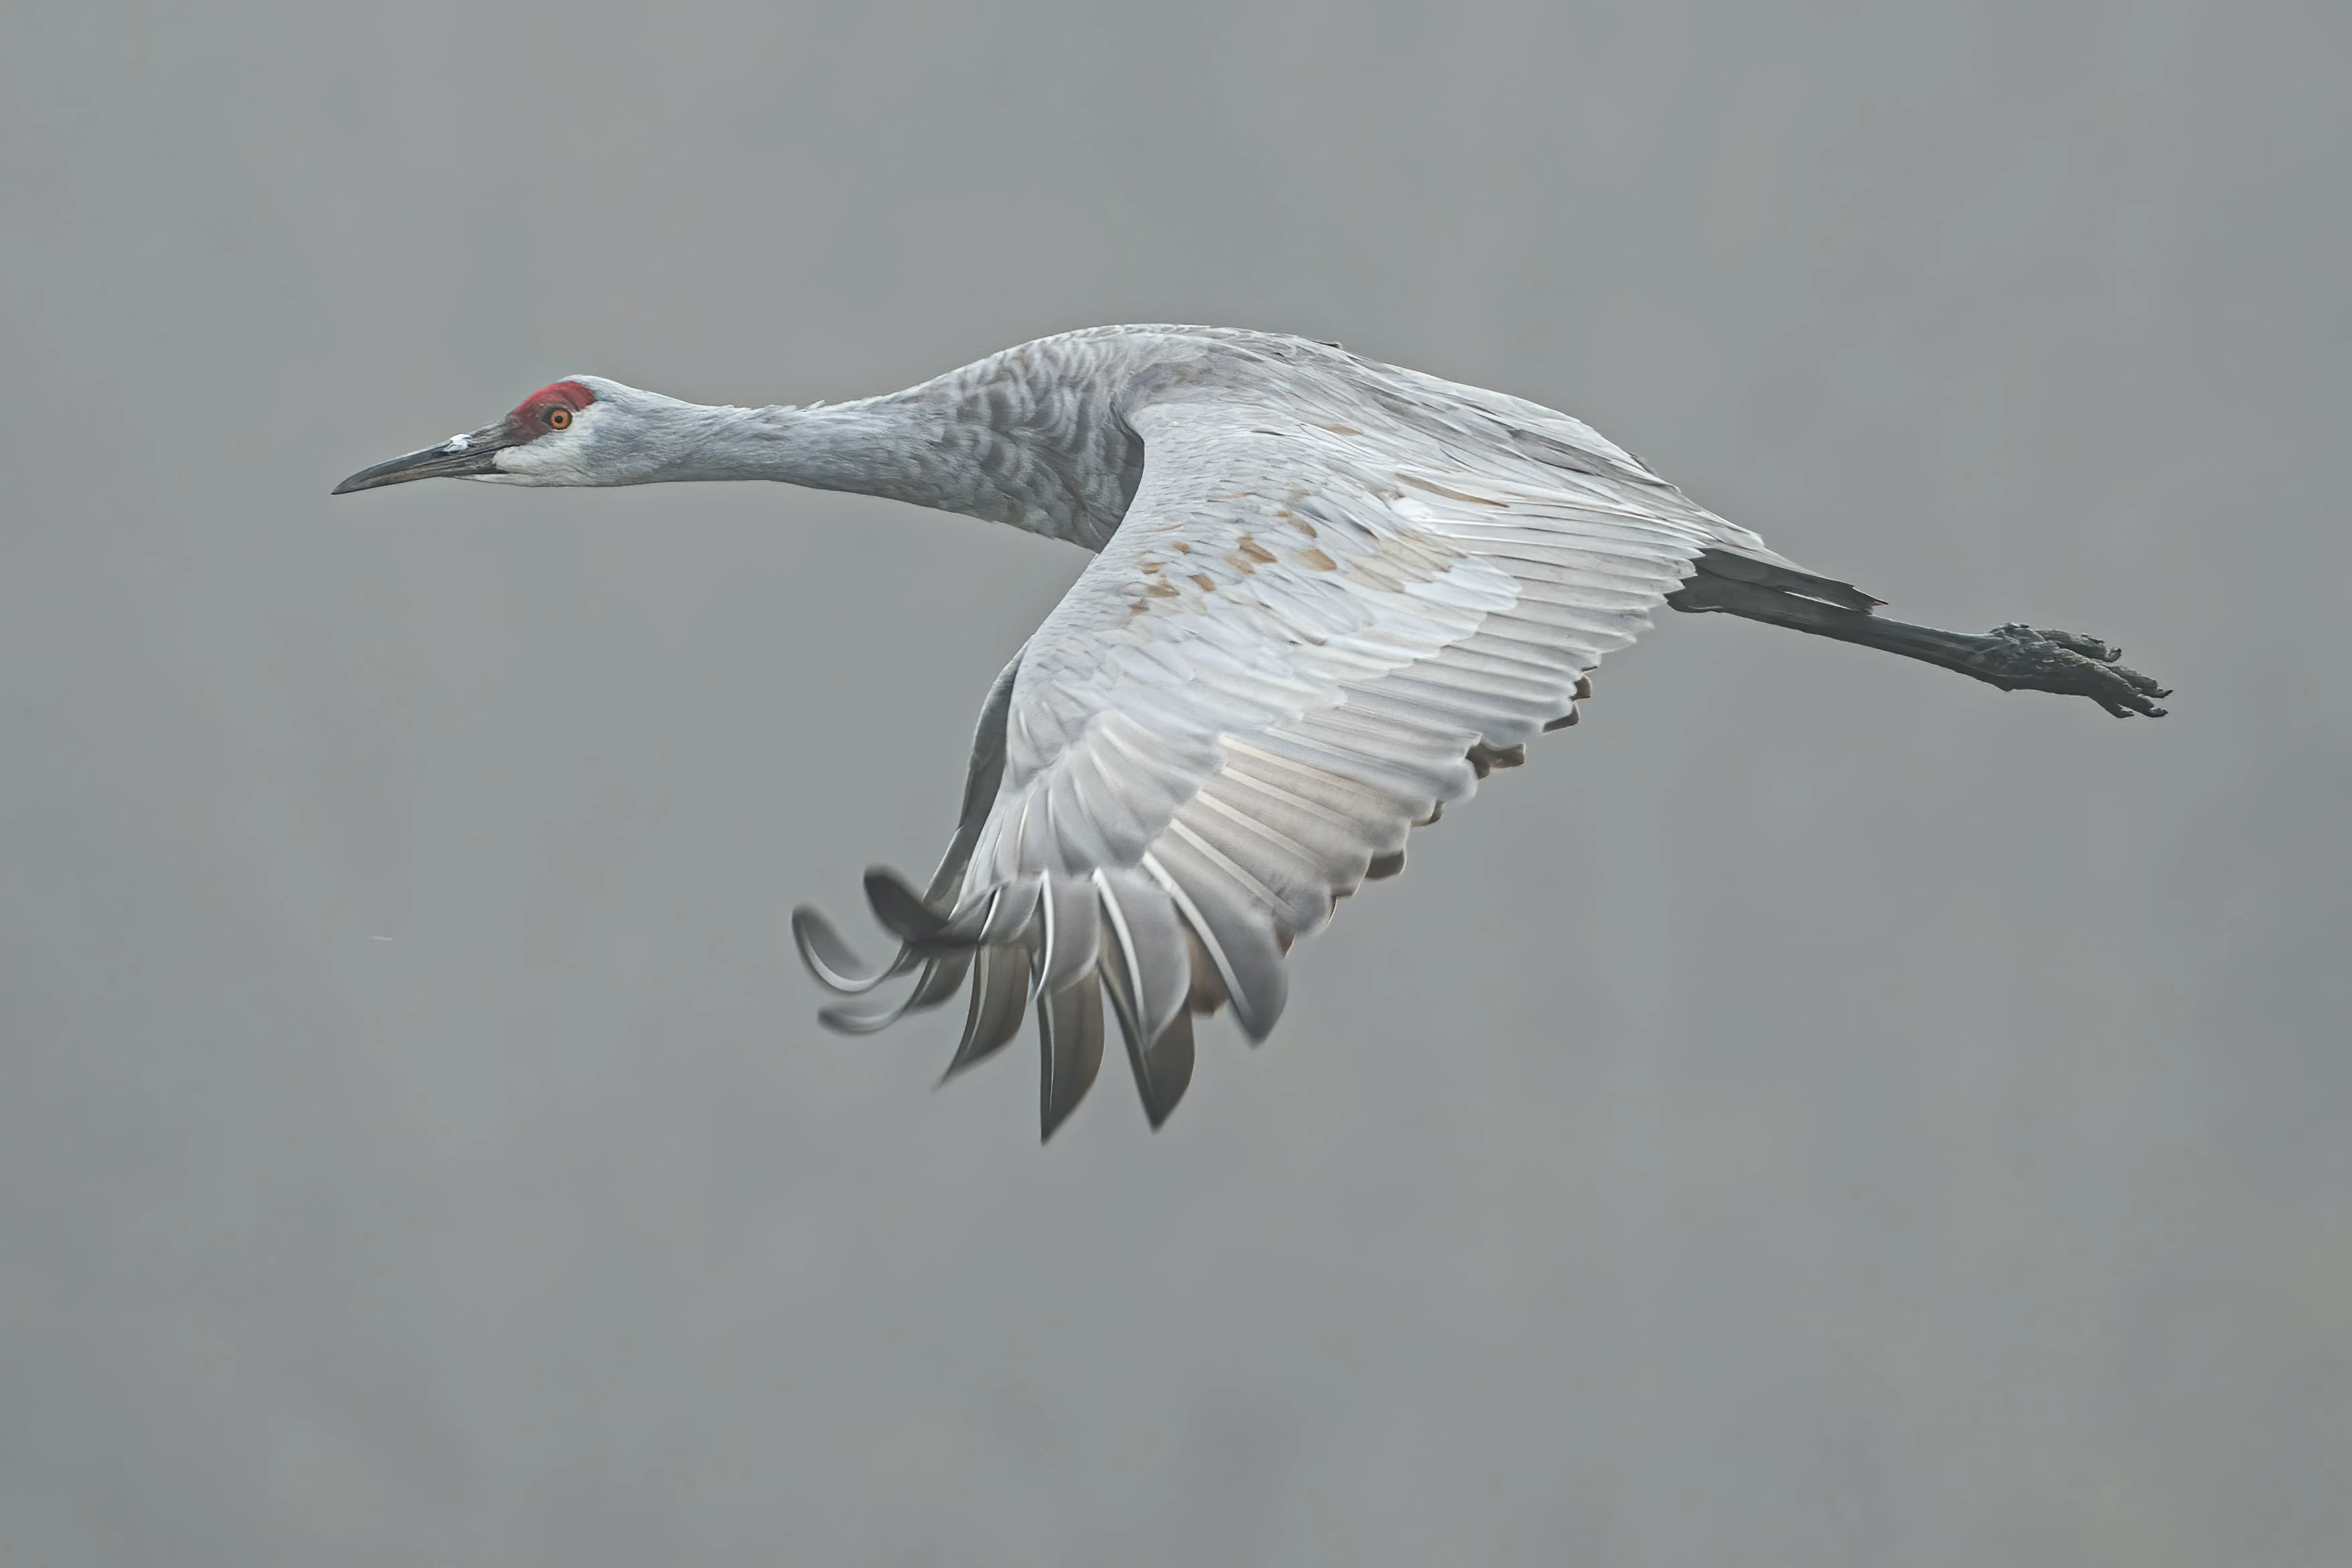 Sandhill crane, flying in the fog.